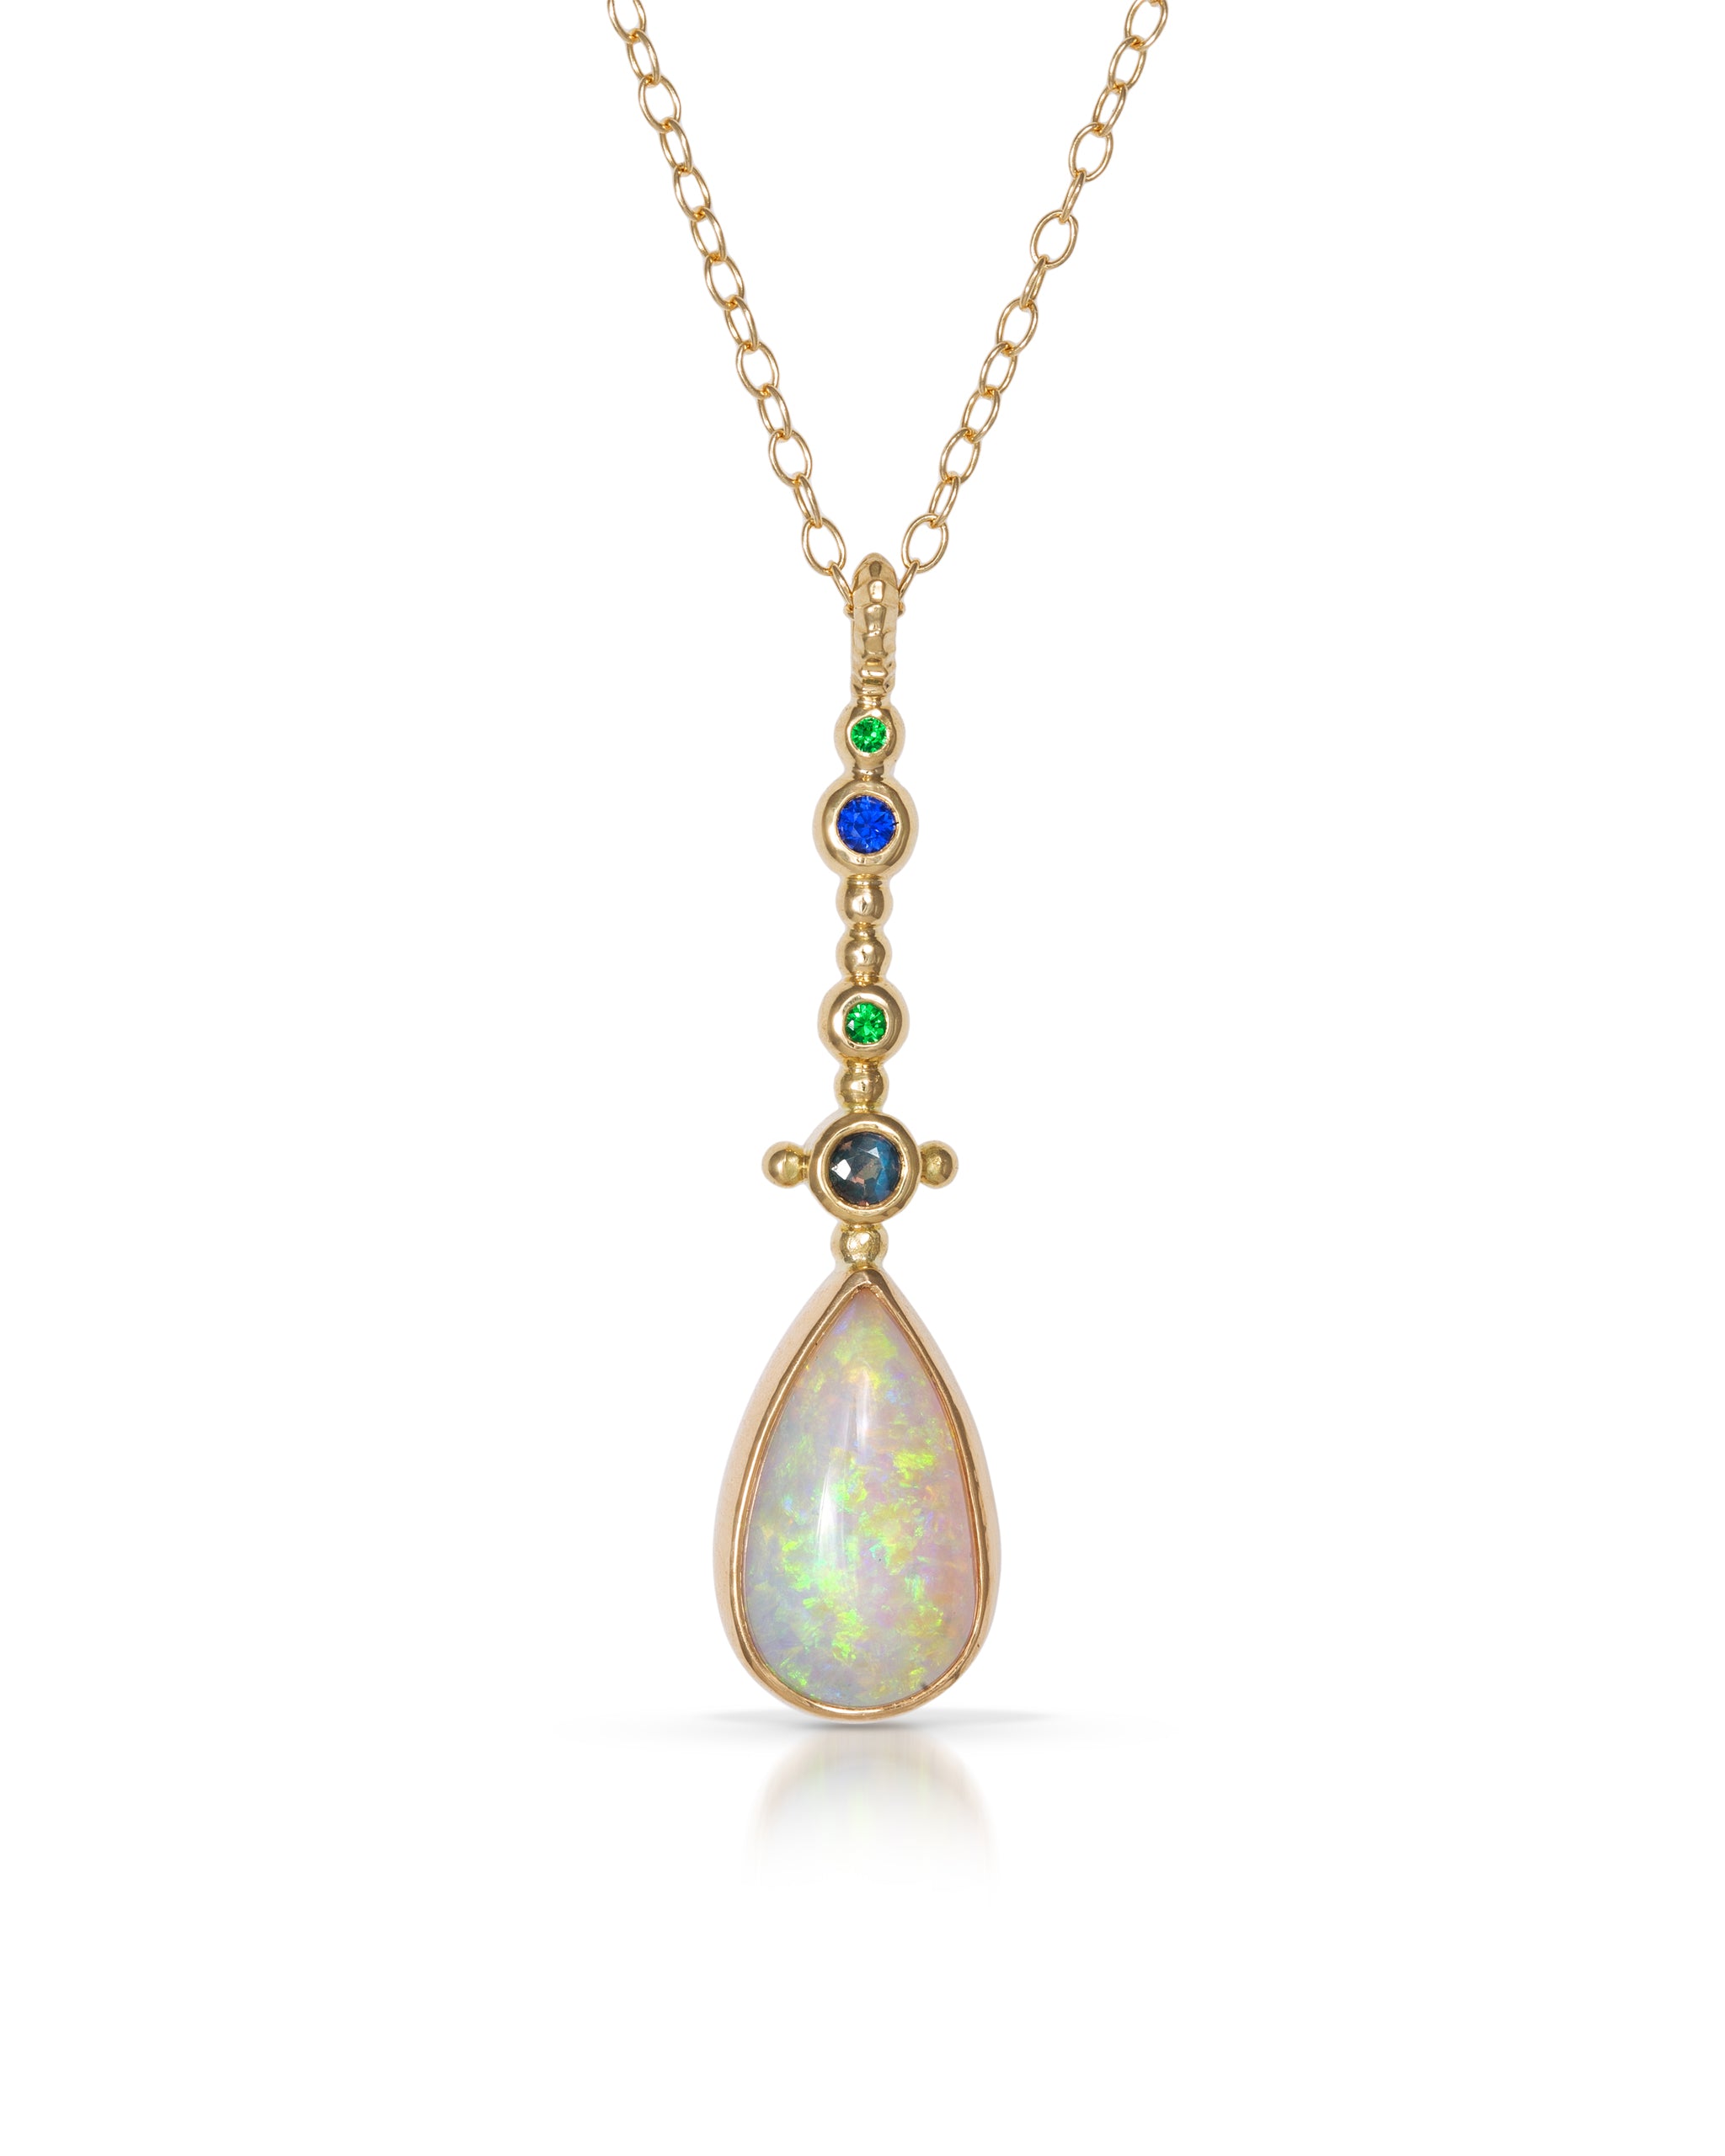 Australian Opal Necklace Pendant Svetlana Lazar   